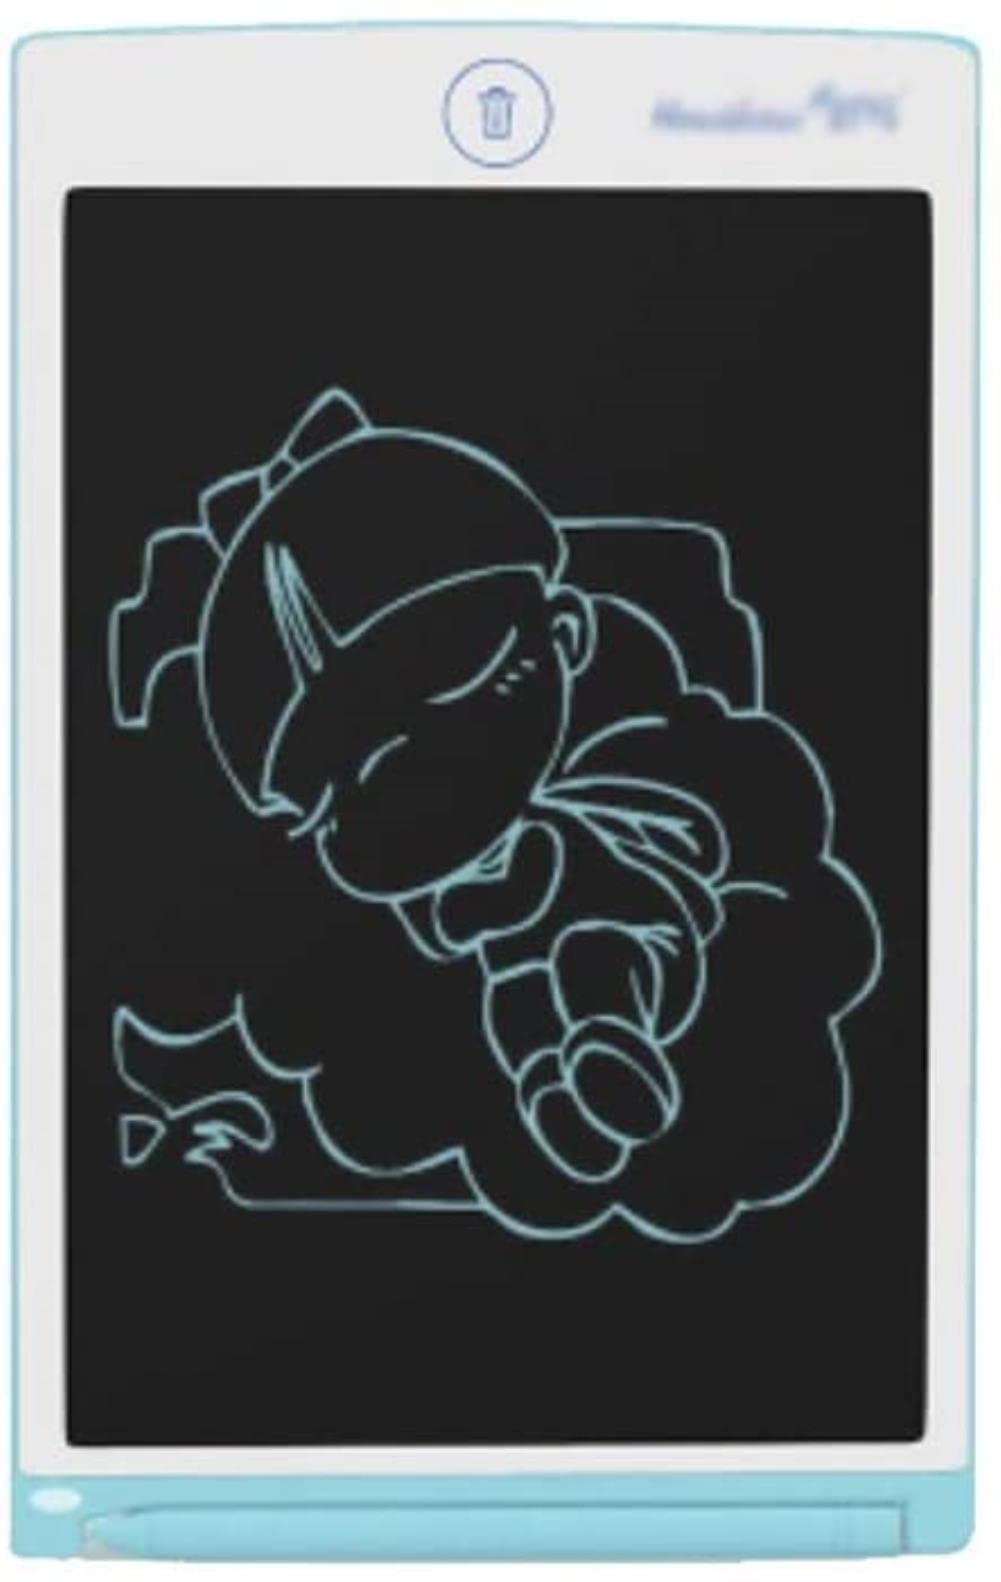 Angelhjq Zeichnungstisch Zeichenbrett LCD, Kreative Graffiti-Board Elektronische Bildung und Lernspielzeug Partial Gelöschte Schreibtablette (Farbe: Blau)